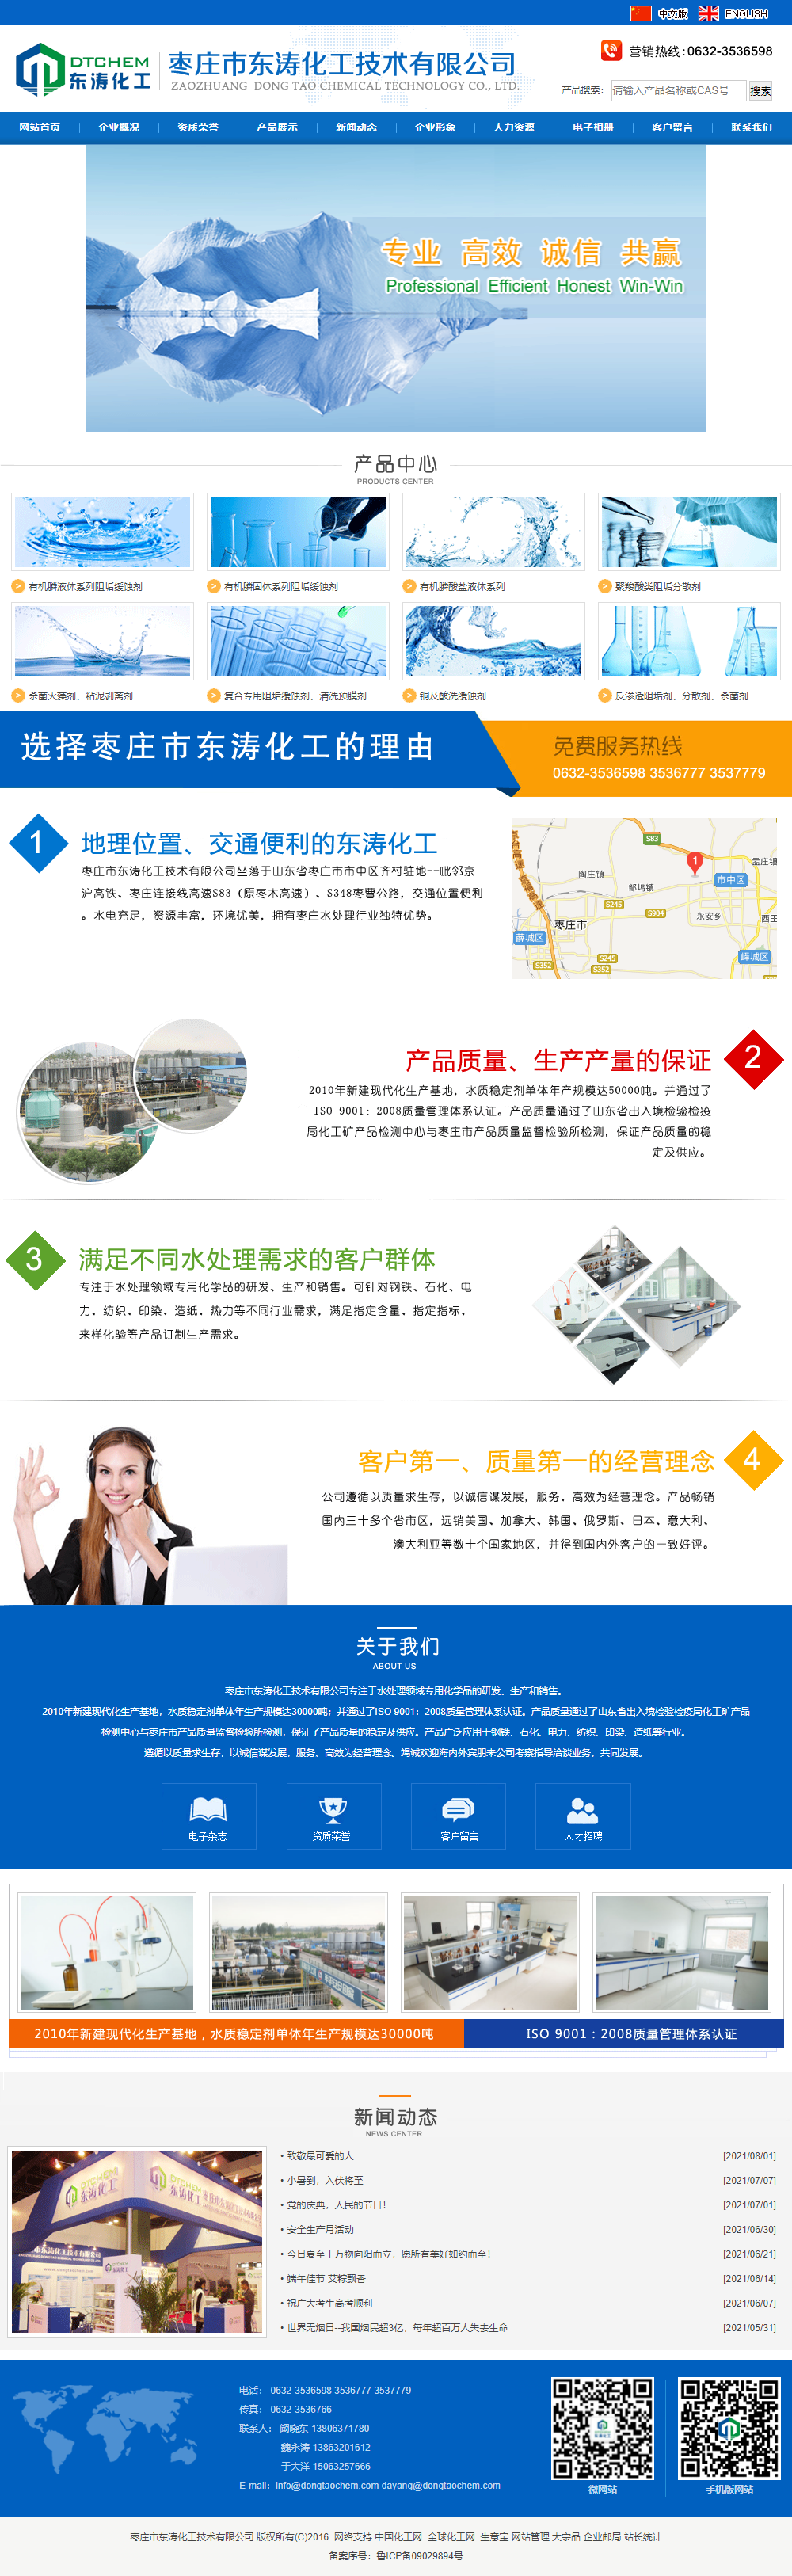 枣庄市东涛化工技术有限公司网站案例